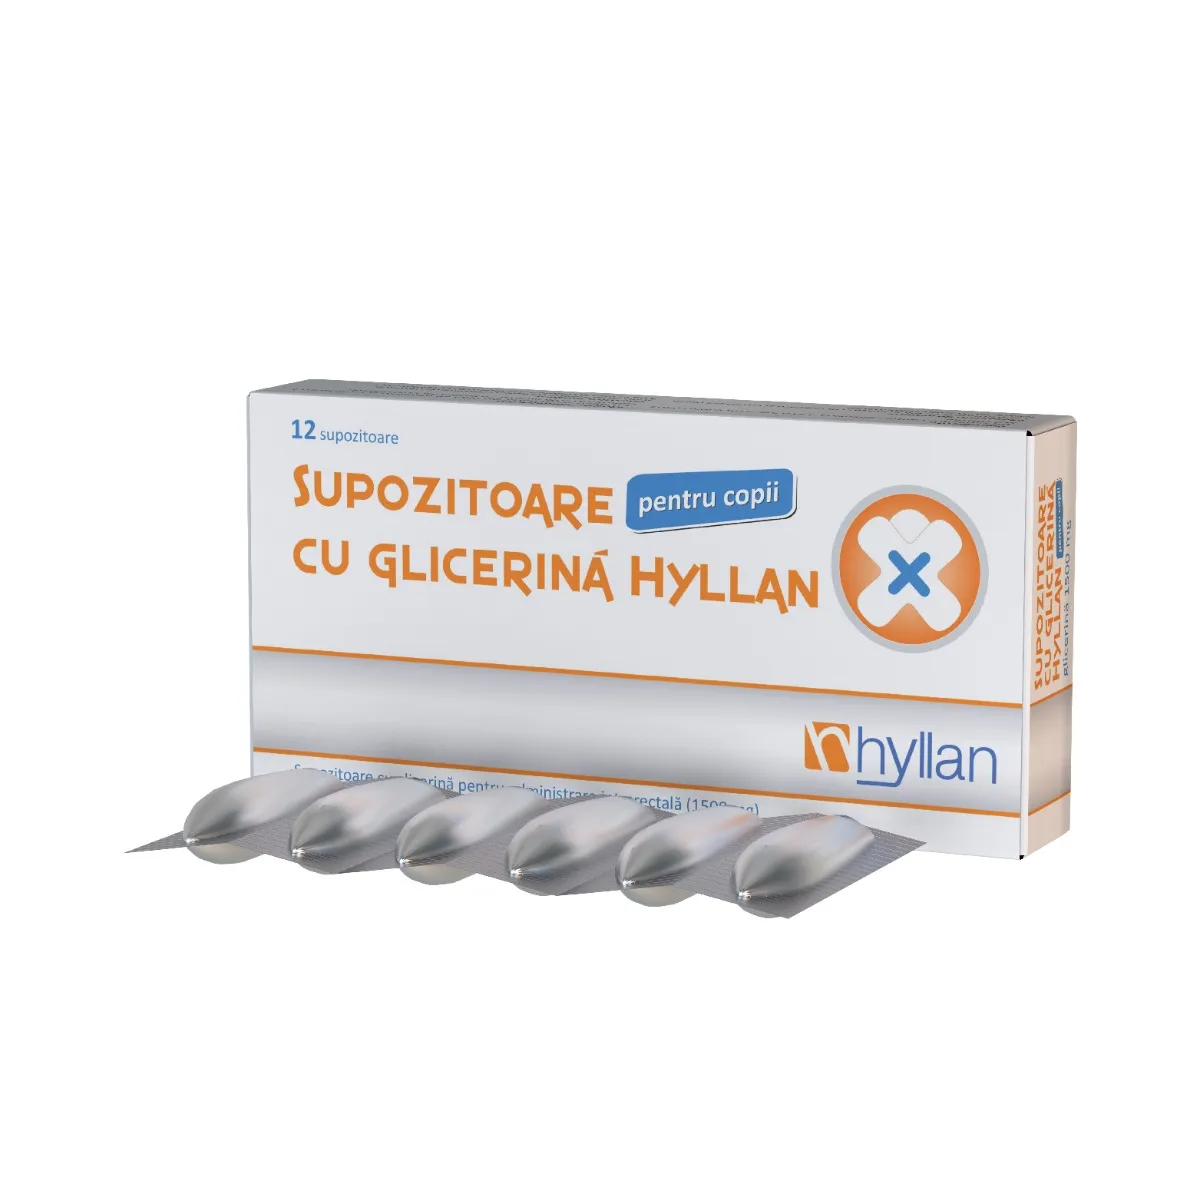 Supozitoare cu glicerina 1500mg pentru copii, 12 bucati, Hyllan Pharma